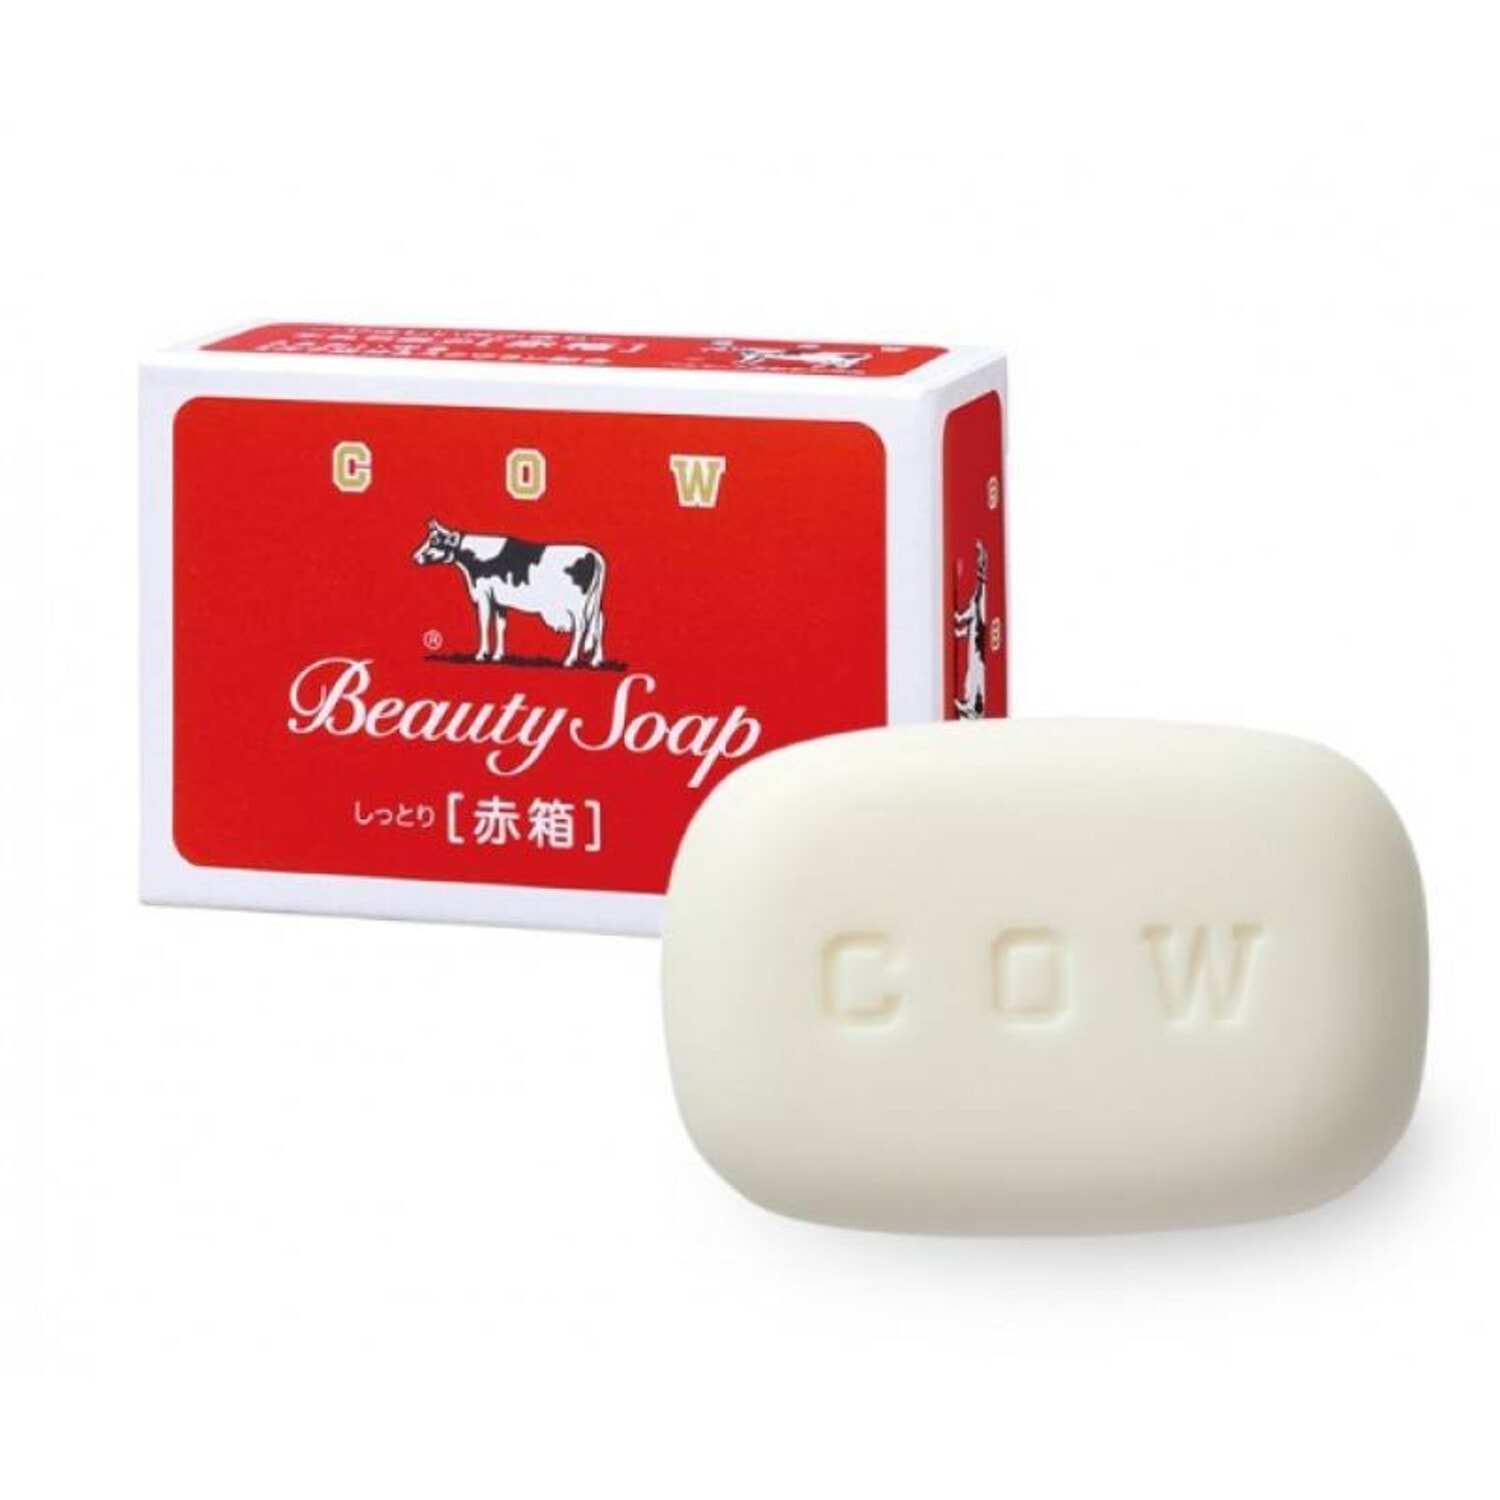 Мыло бьюти. Туалетное мыло с молоком Cow brand "Beauty Soap" аромат жасмина. Мыло туалетное молочное "Beauty Soap" с ароматом цветов, 100 г. Японское мыло. Японское мыло с коровой.